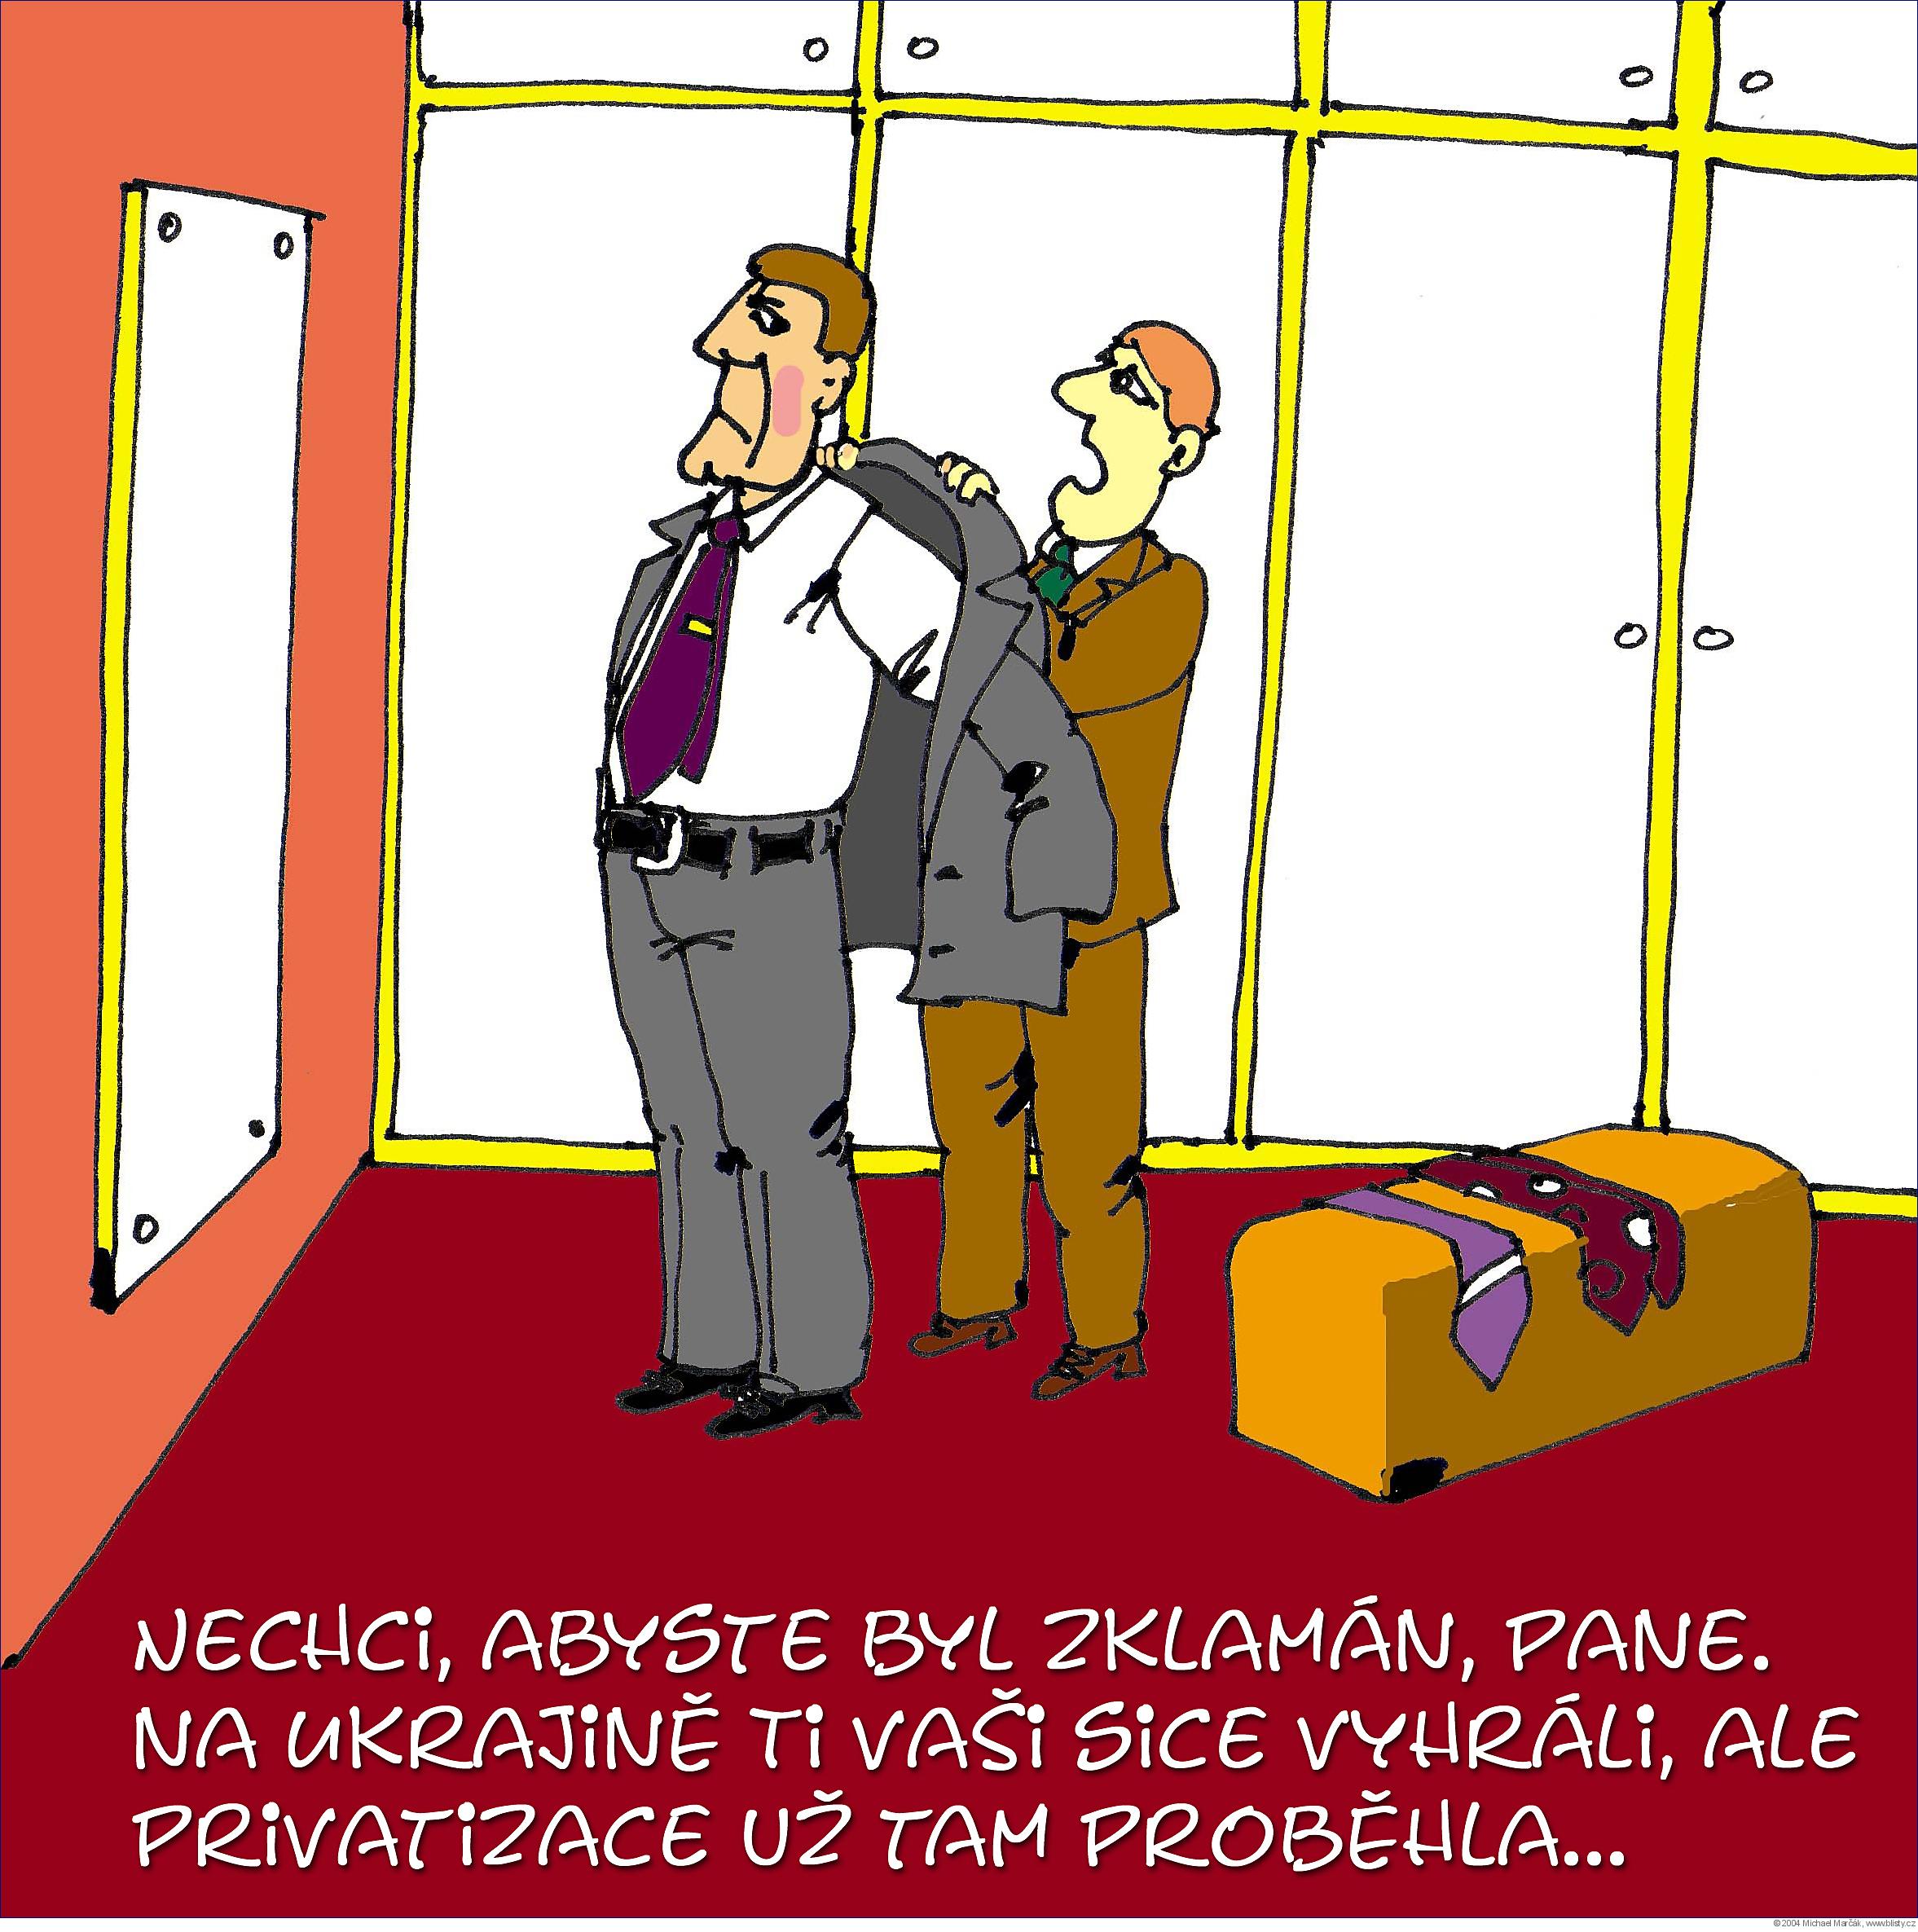 Michael Marčák: Nechci, abyste byl zklamán, pane. Na Ukrajině ti vaši sice vyhráli, ale privatizace už tam proběhla...